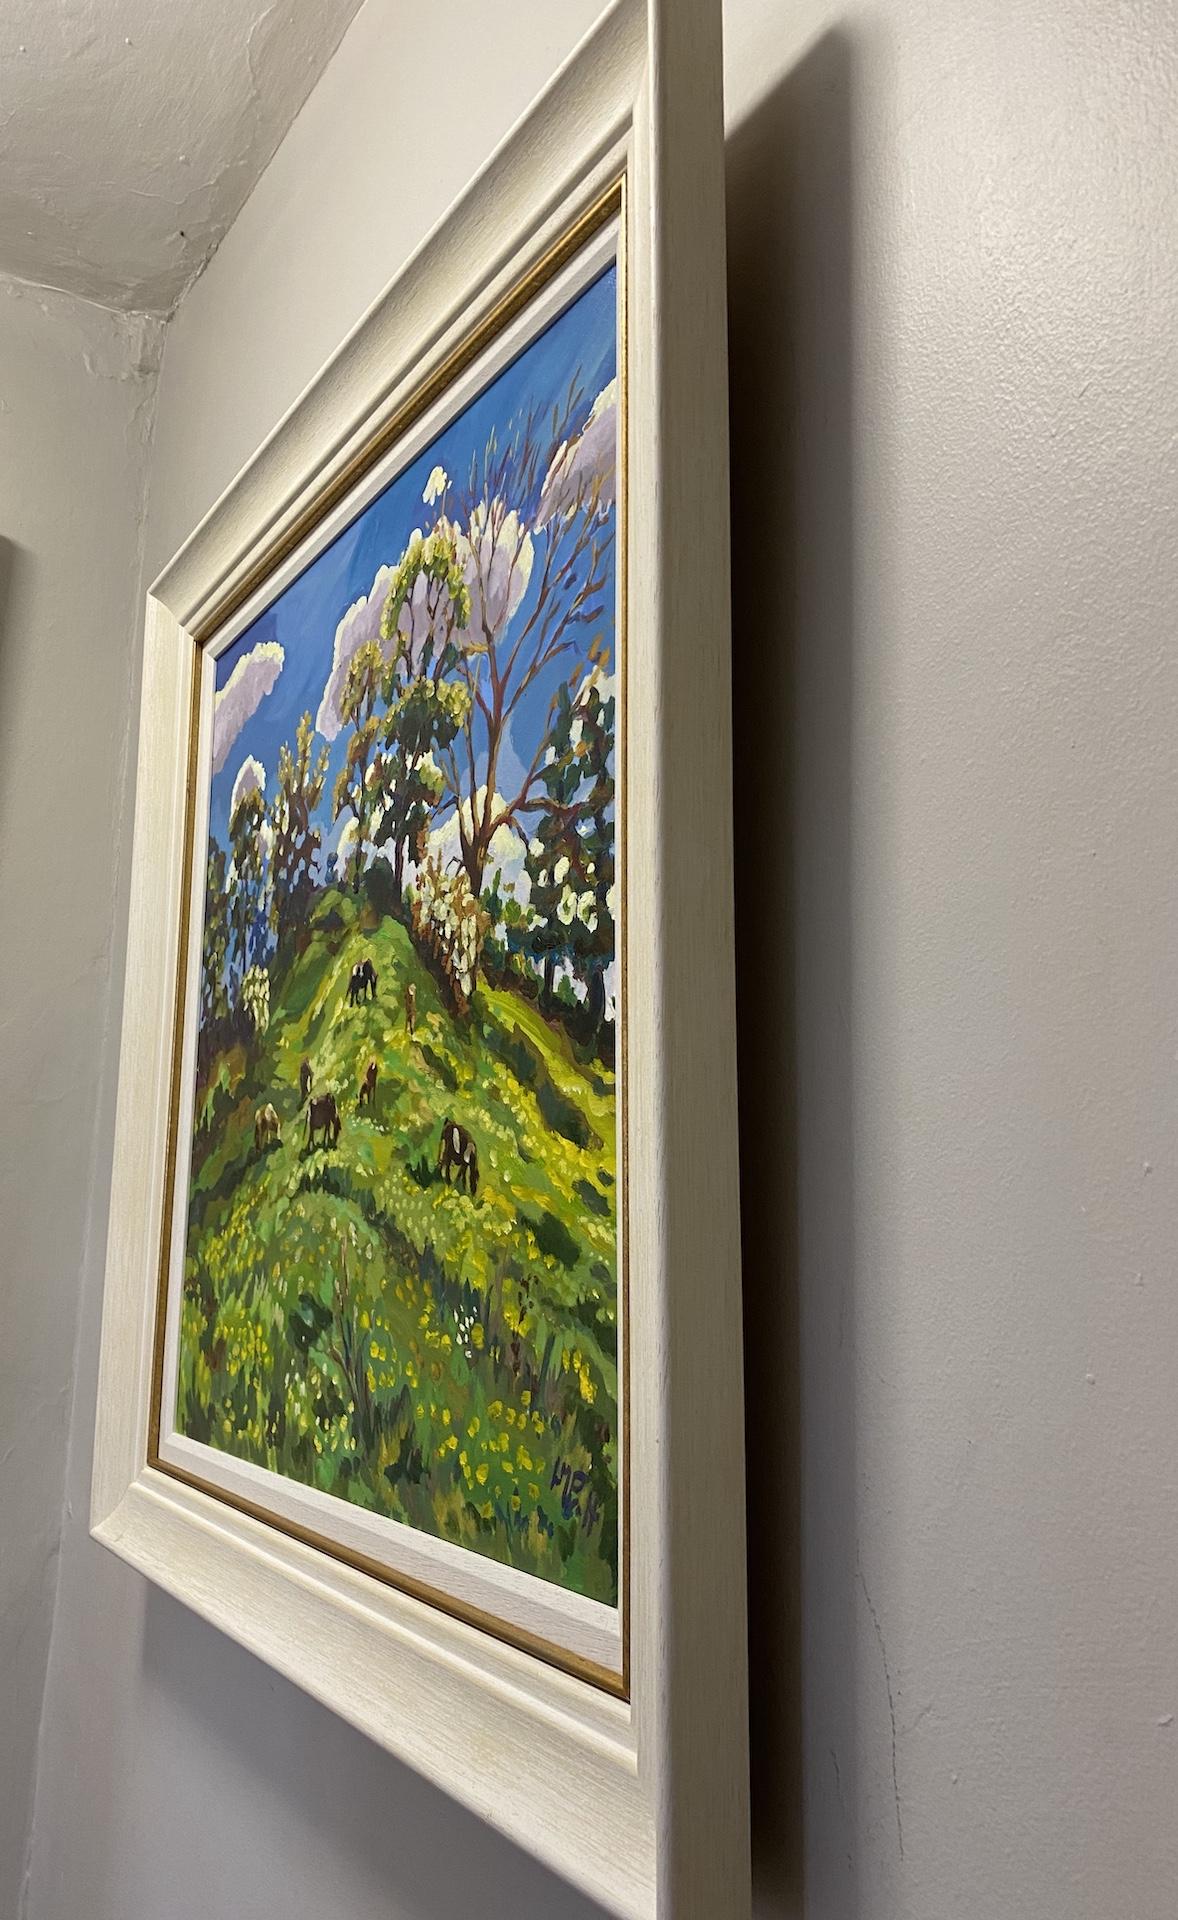 Grazers on the Motte and Bailey ist ein Original-Ölgemälde von Lucy Pratt. Es zeigt eine schöne Landschaft mit grünen Hügeln, grasenden Kühen, hohen Bäumen und blauem Himmel im Hintergrund. Ein helles und schönes englisches